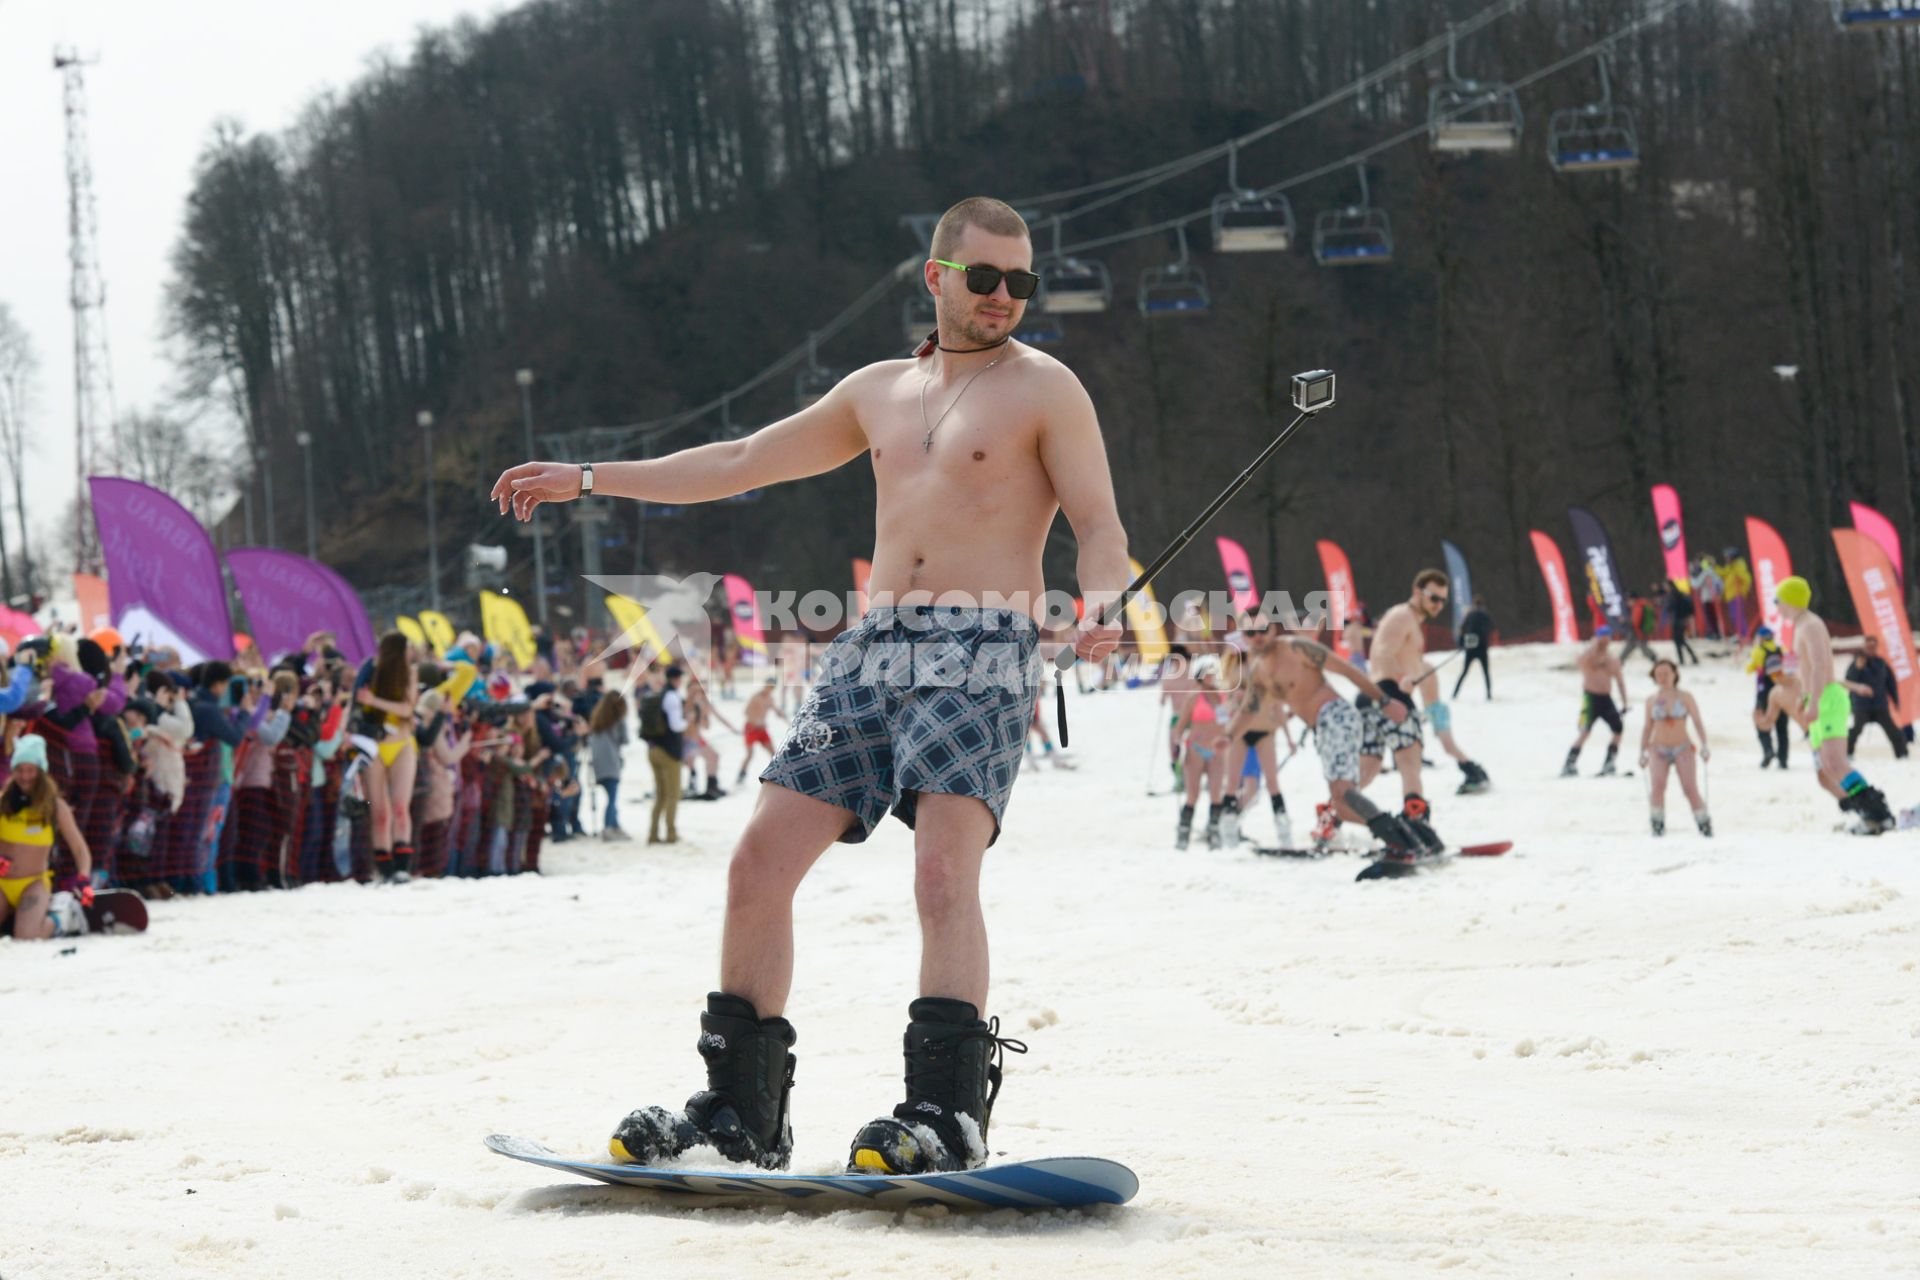 Сочи, Красная Поляна. Участник массового спуска с горы в купальных костюмах  в рамках фестиваля BoogelWoogel-2018 на горнолыжном курорте `Роза Хутор`.